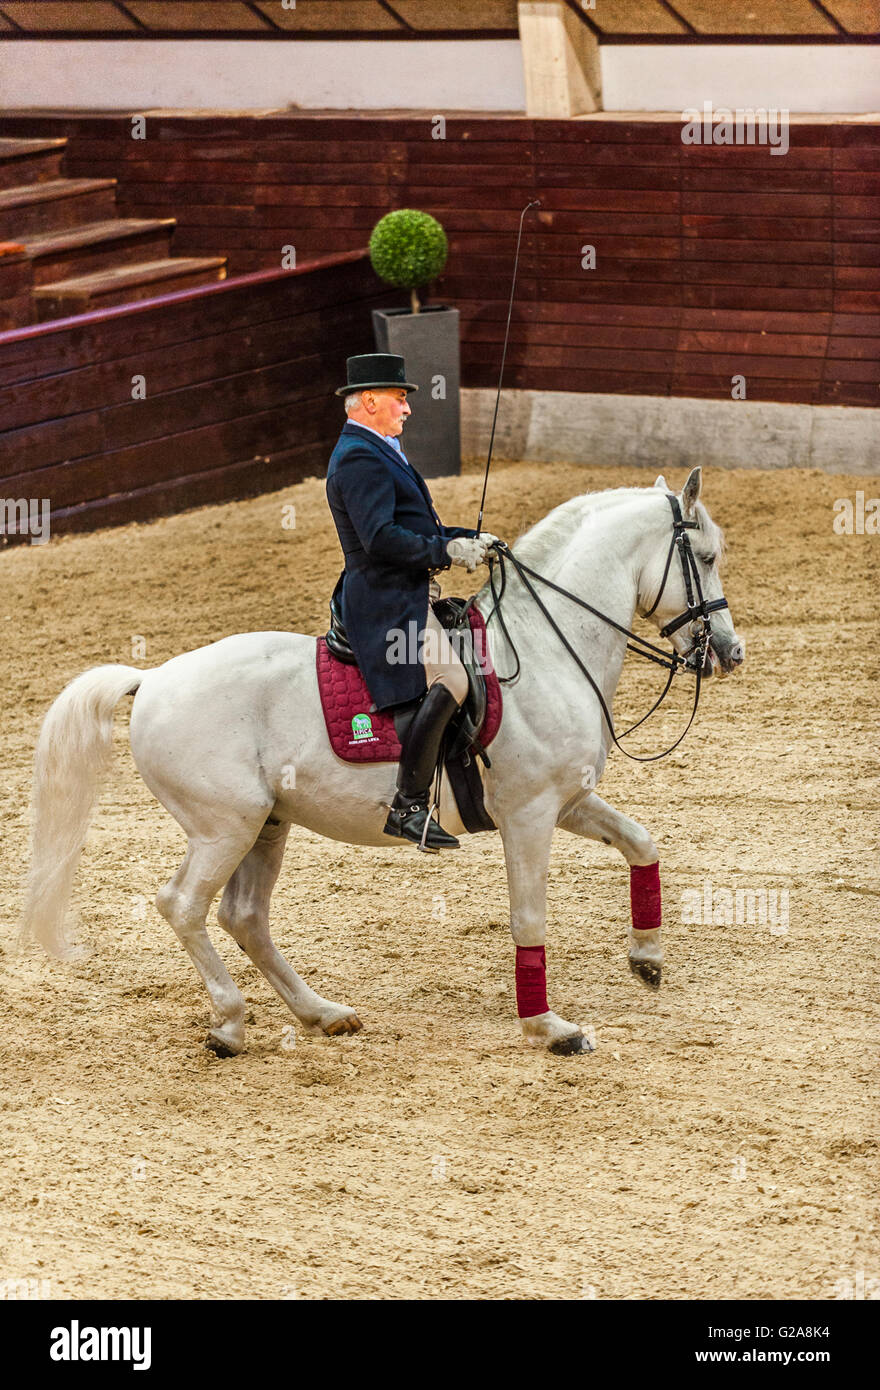 La Slovenia Costa e Kras Lipica - primo evento equestre del 2016 cavalli lipizzani -Exhibition Classic Dressage Training - cavaliere e cavallo Foto Stock